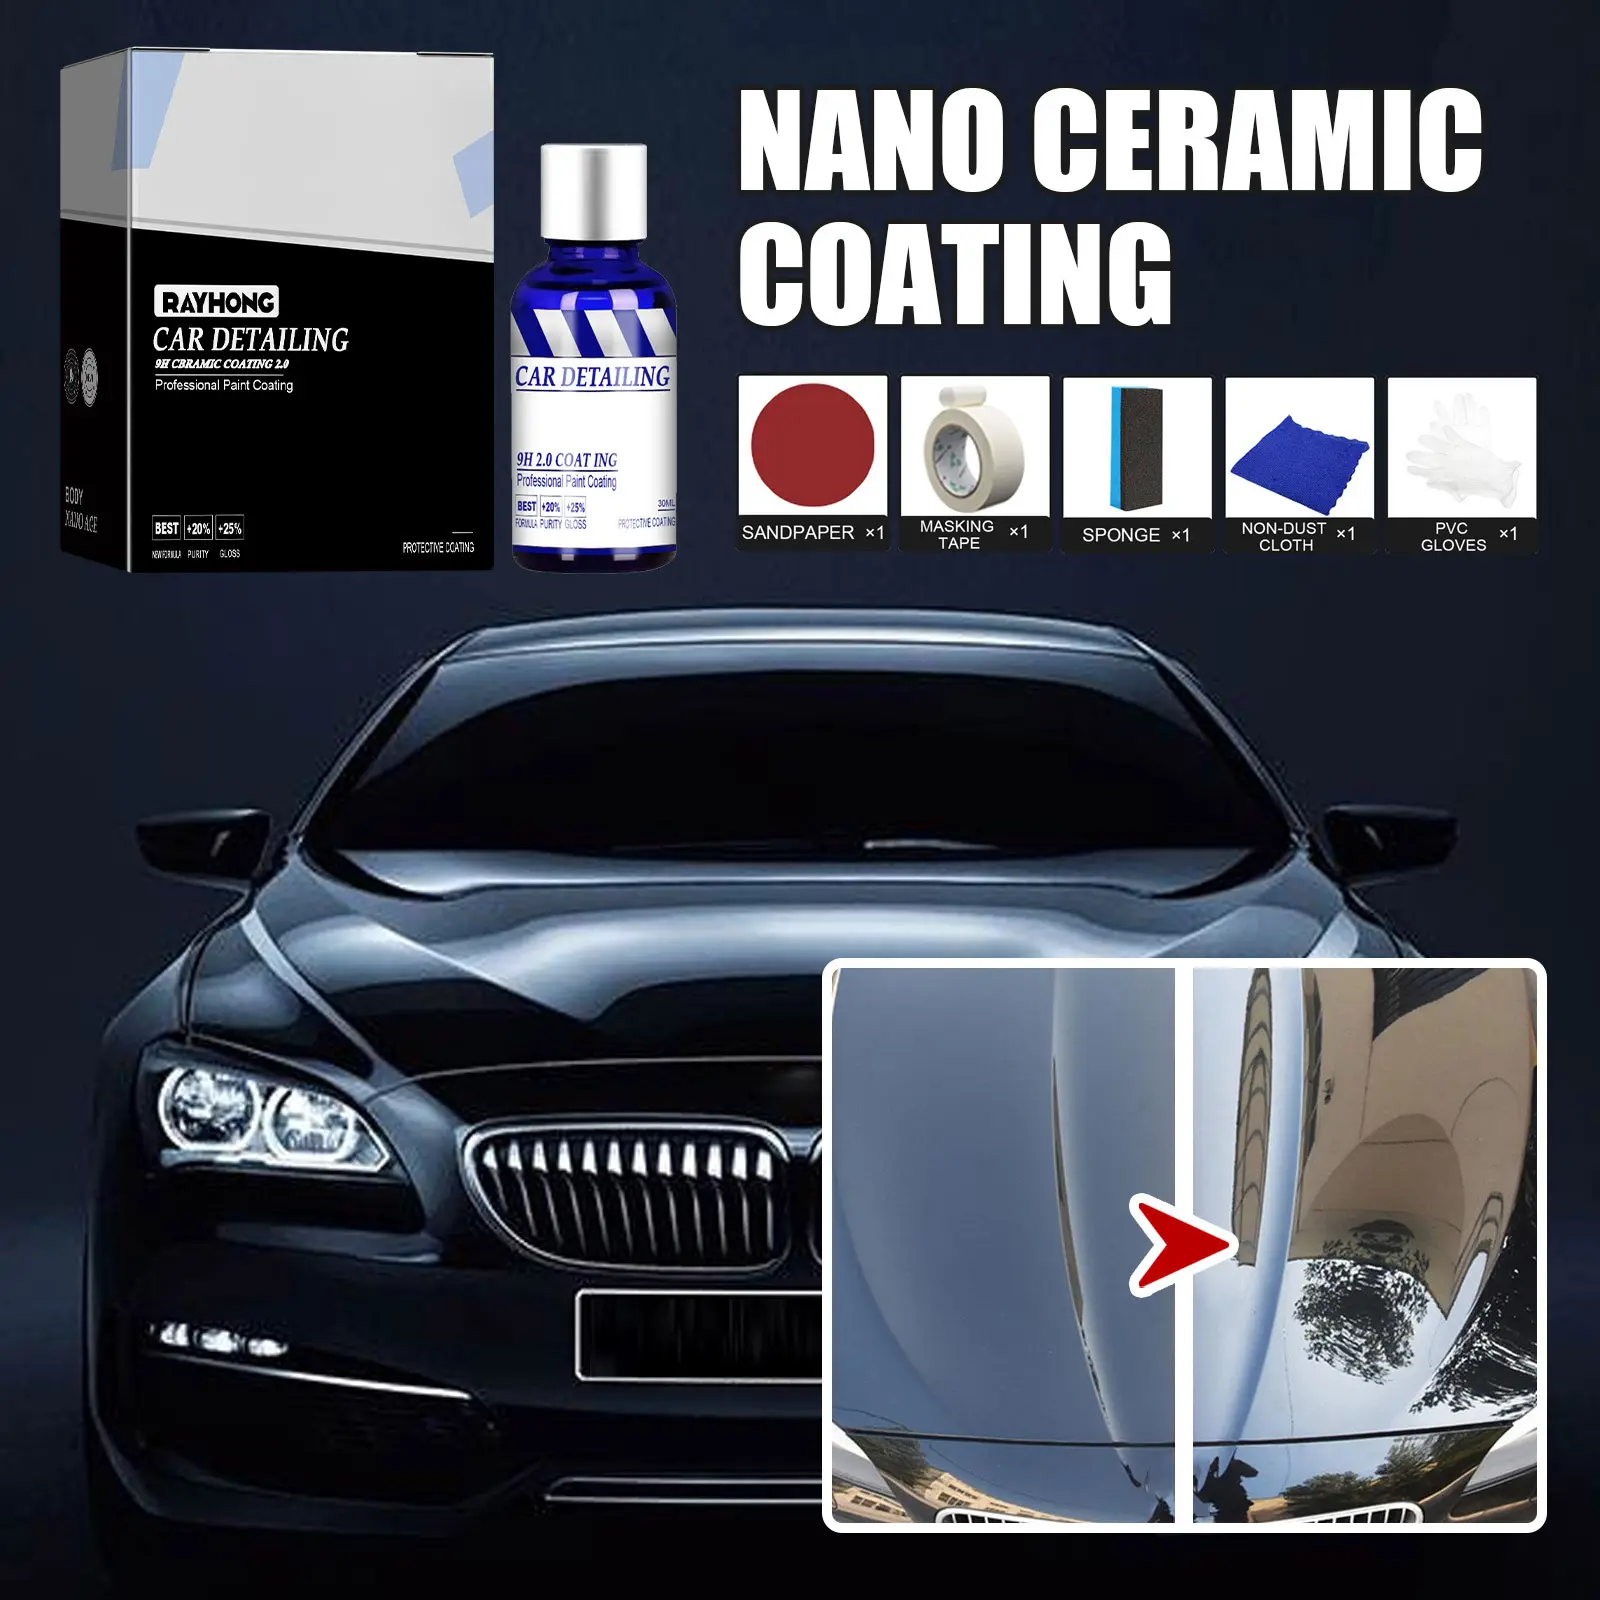 Nano revestimiento de cerámica automotriz, revestimiento de cristal superhidrofóbico líquido, impermeable, nano cerámica, pintura de coche reacondicionada